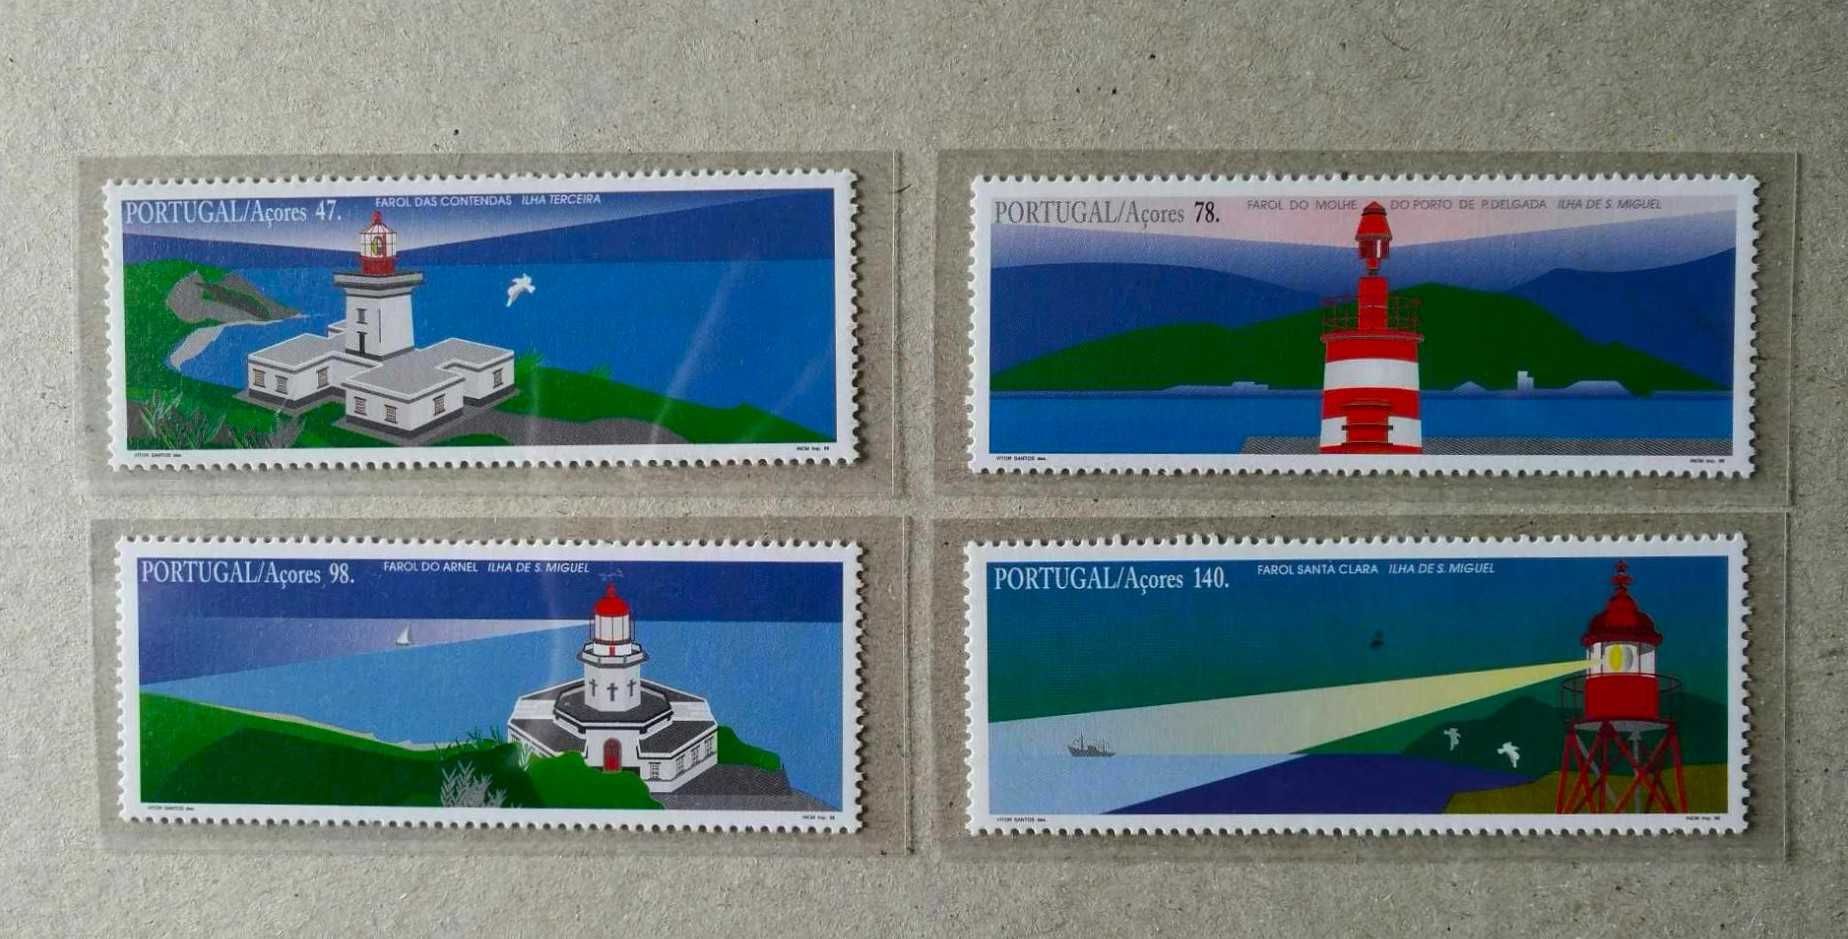 Séries 2337/40 Farois dos Açores 1996